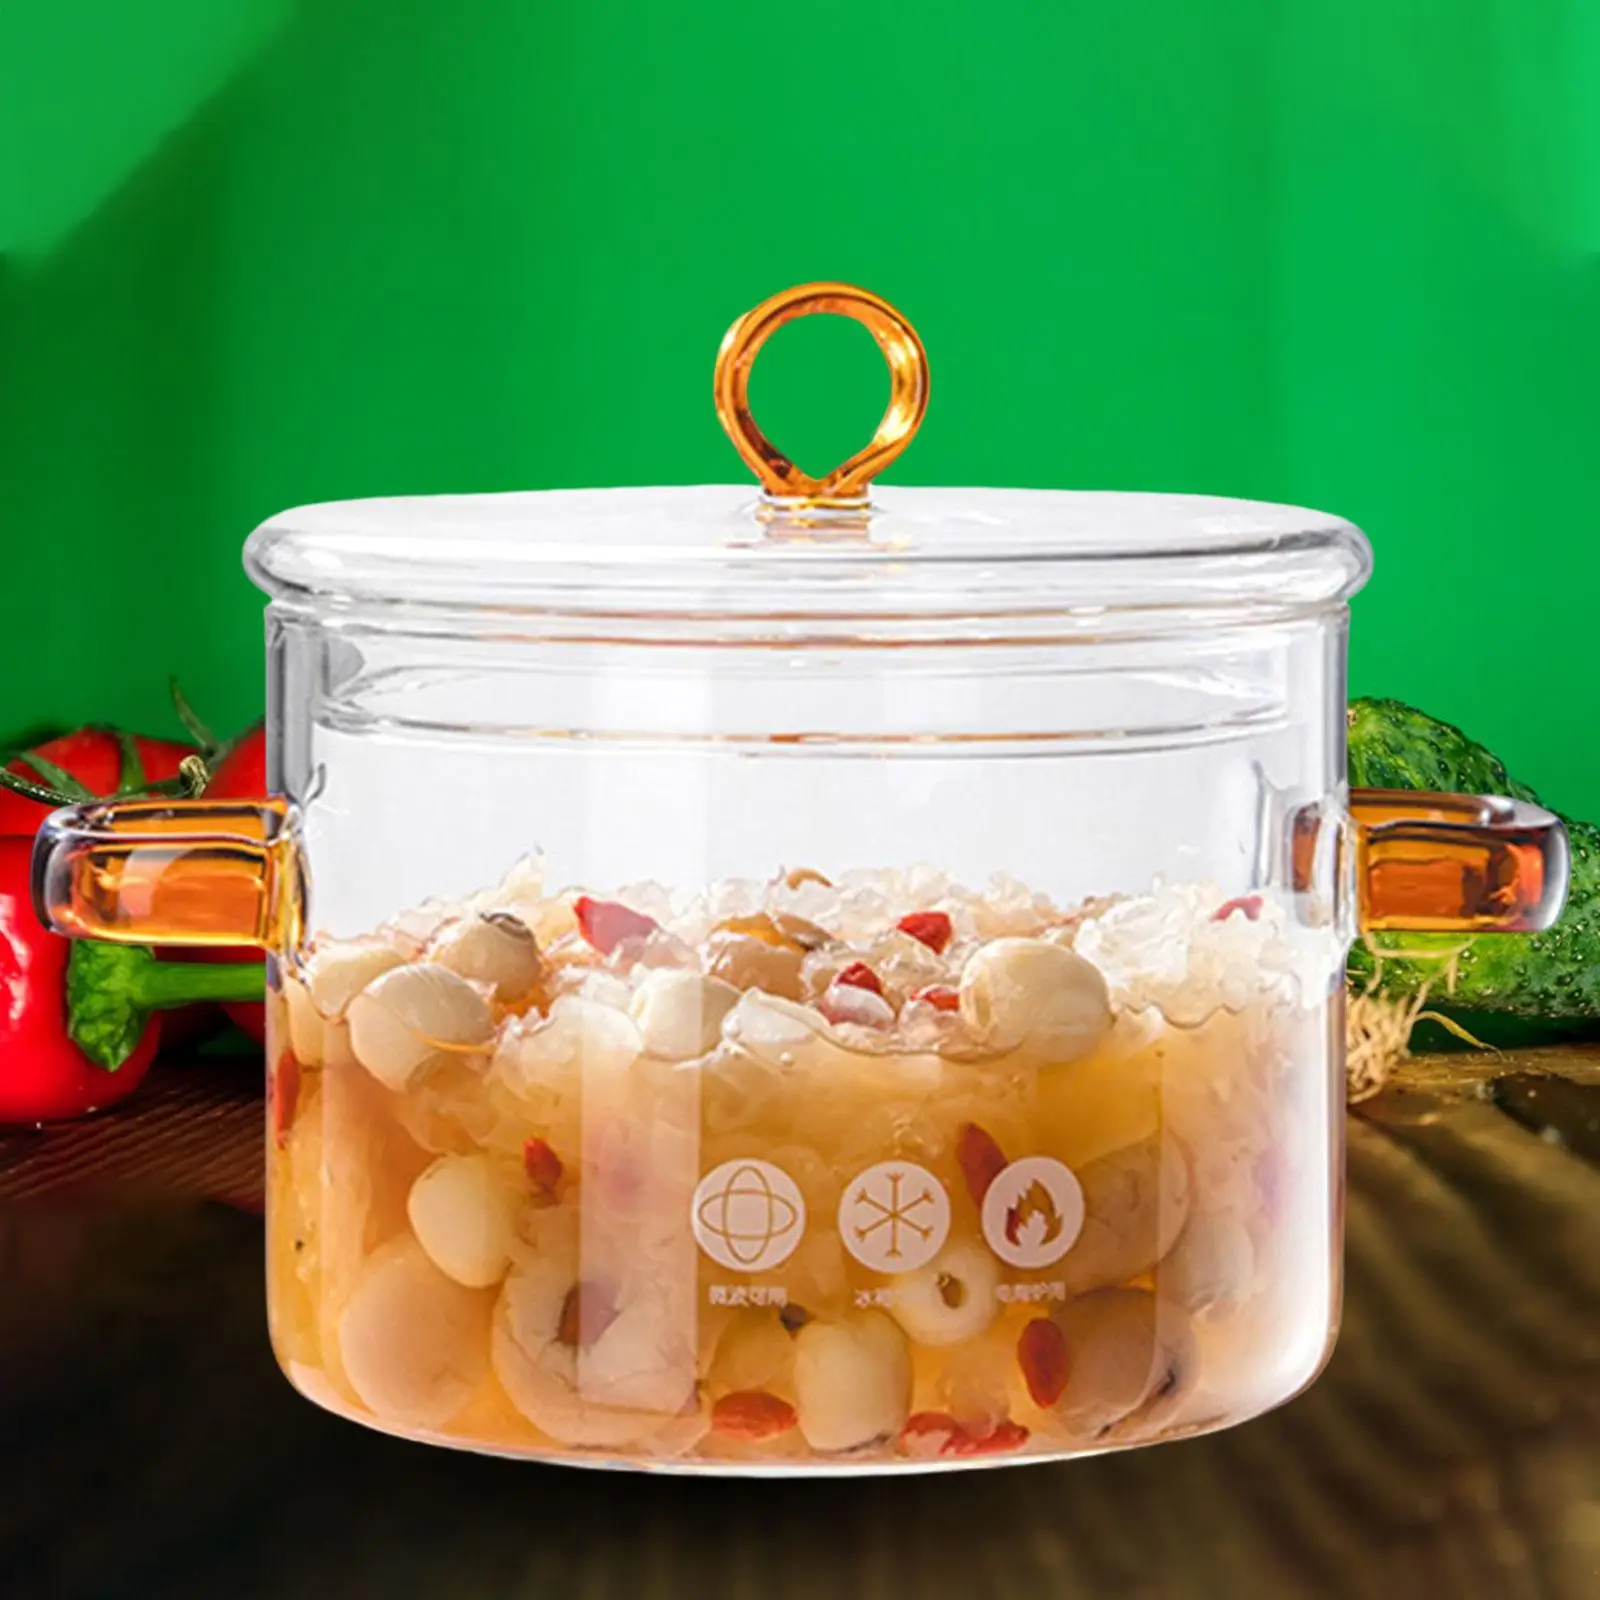 Heat Resistant Soup Pot Handmade Mini Size Cookware with Lid Glass Cooking Pot Milk Sauce Hot Pot for Soup Milk Noodles